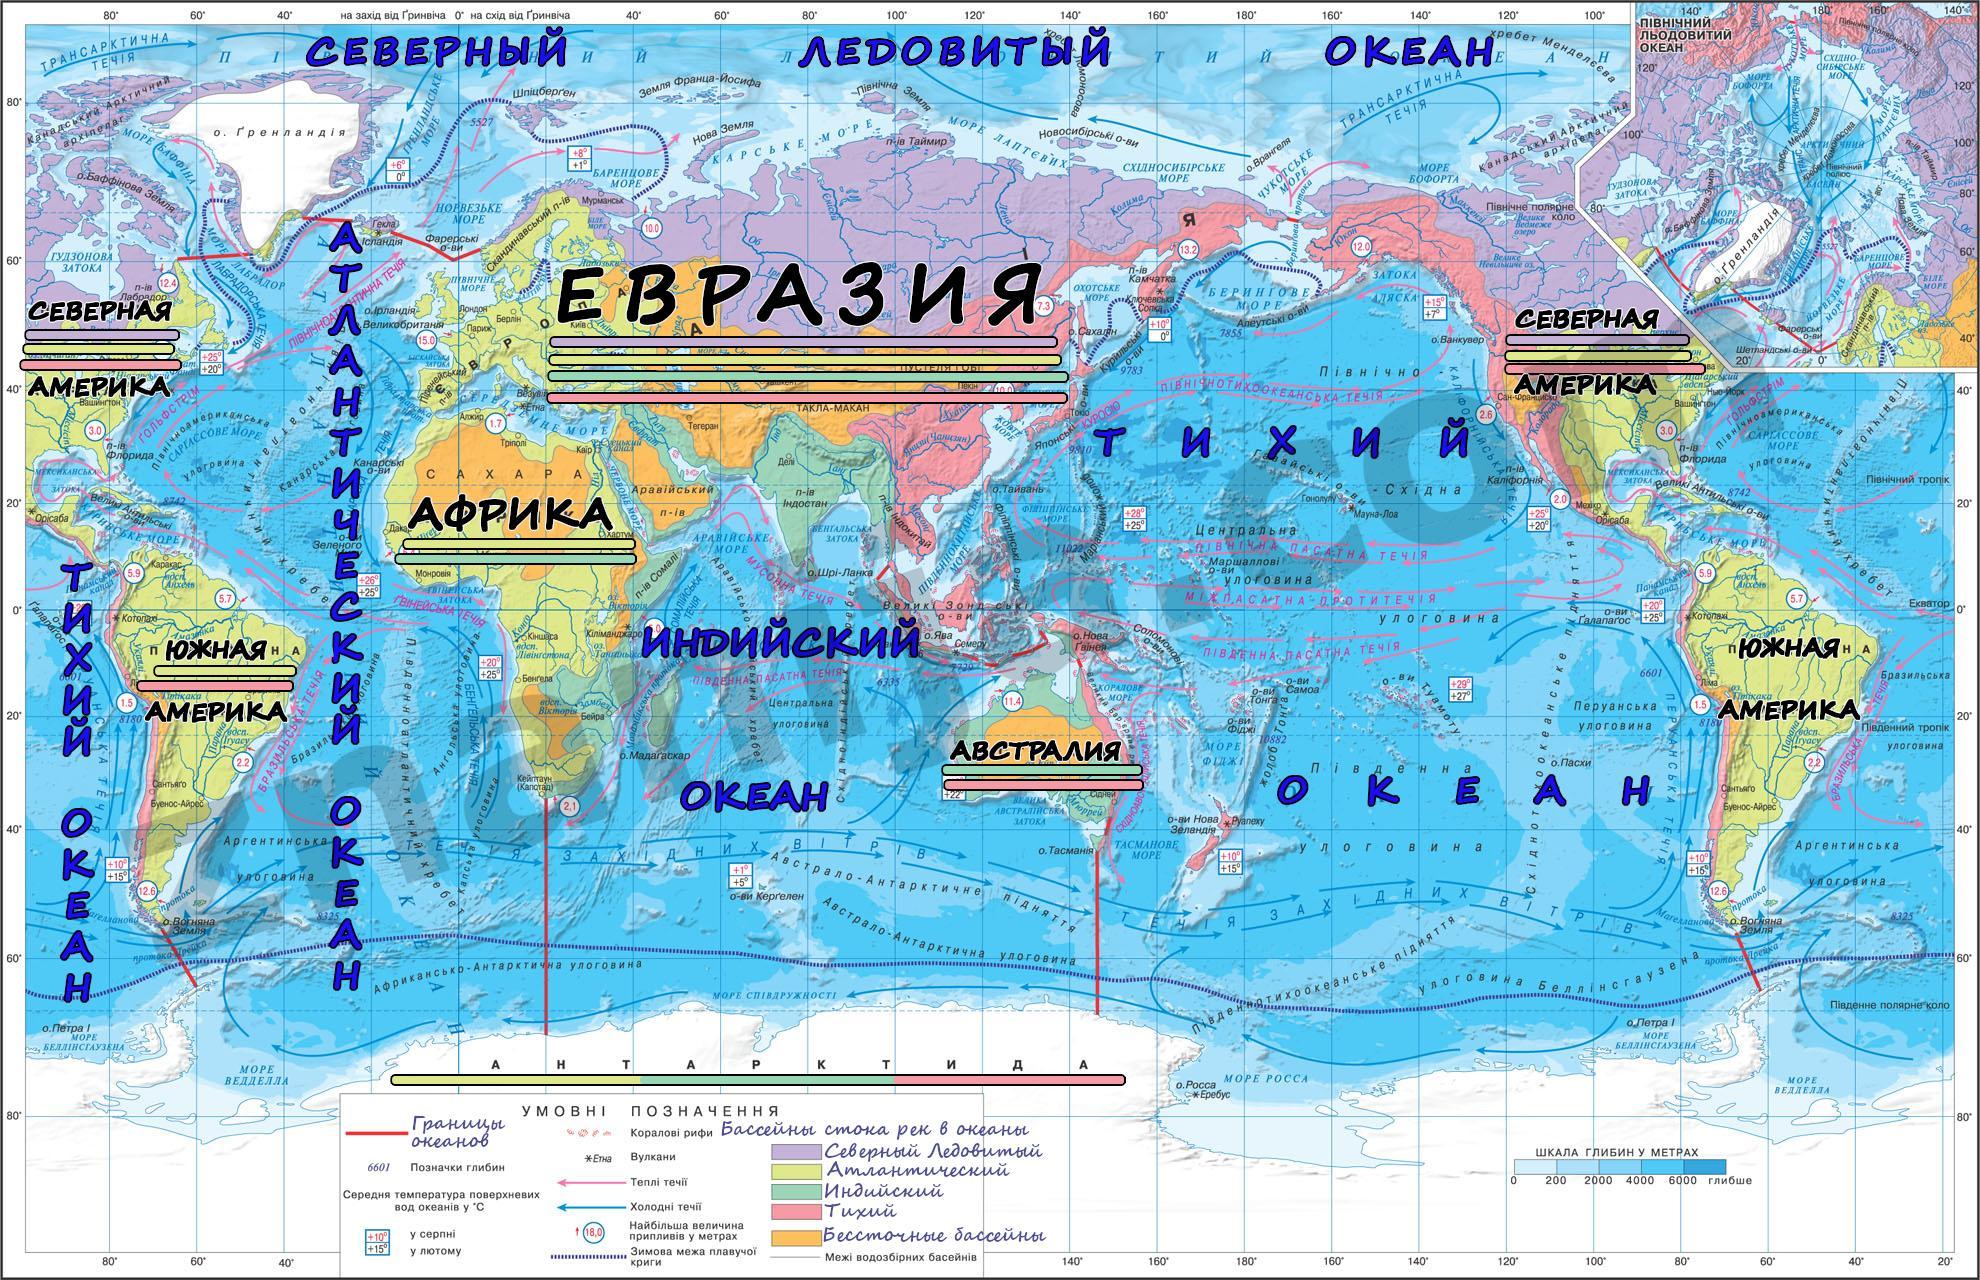 Реки бассейна индийского океана в евразии. Моря на атласе 6 класс география карта мирового океана. Карта krtfyjd. Тихий океан географическое положение. Карта океанов в мире.